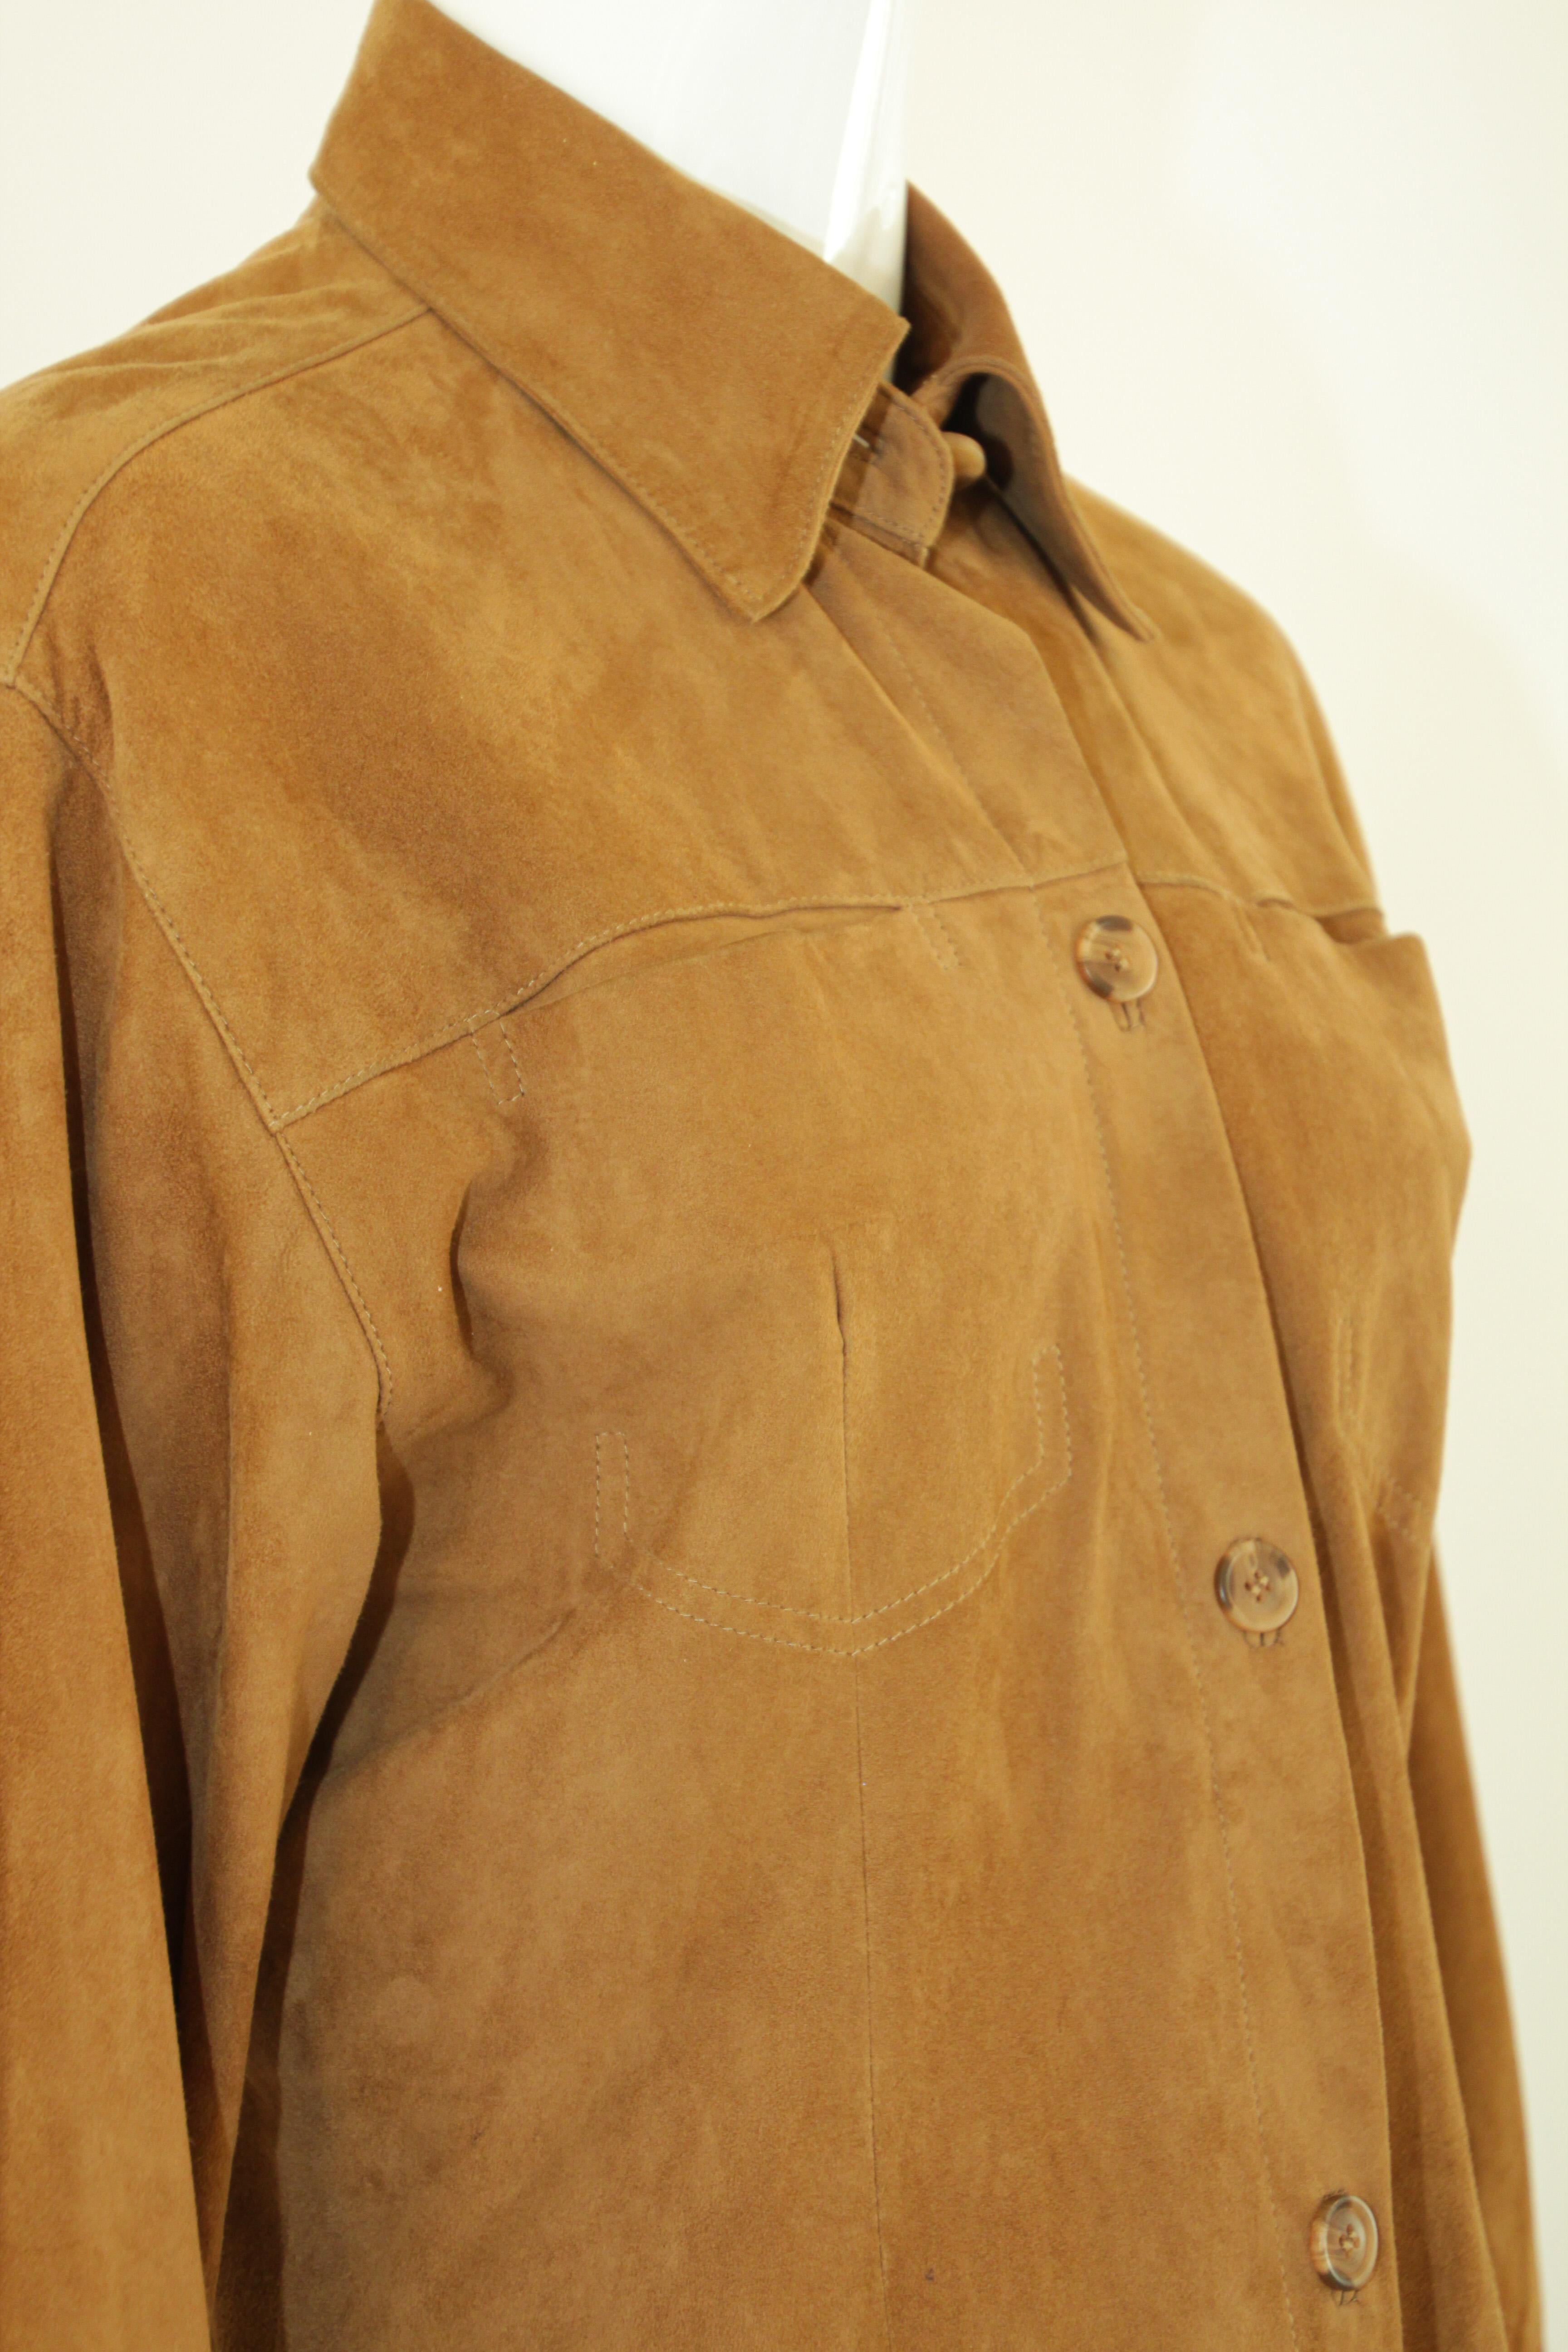 Women's or Men's Vintage Suede Shirt Jacket Light Brown For Sale